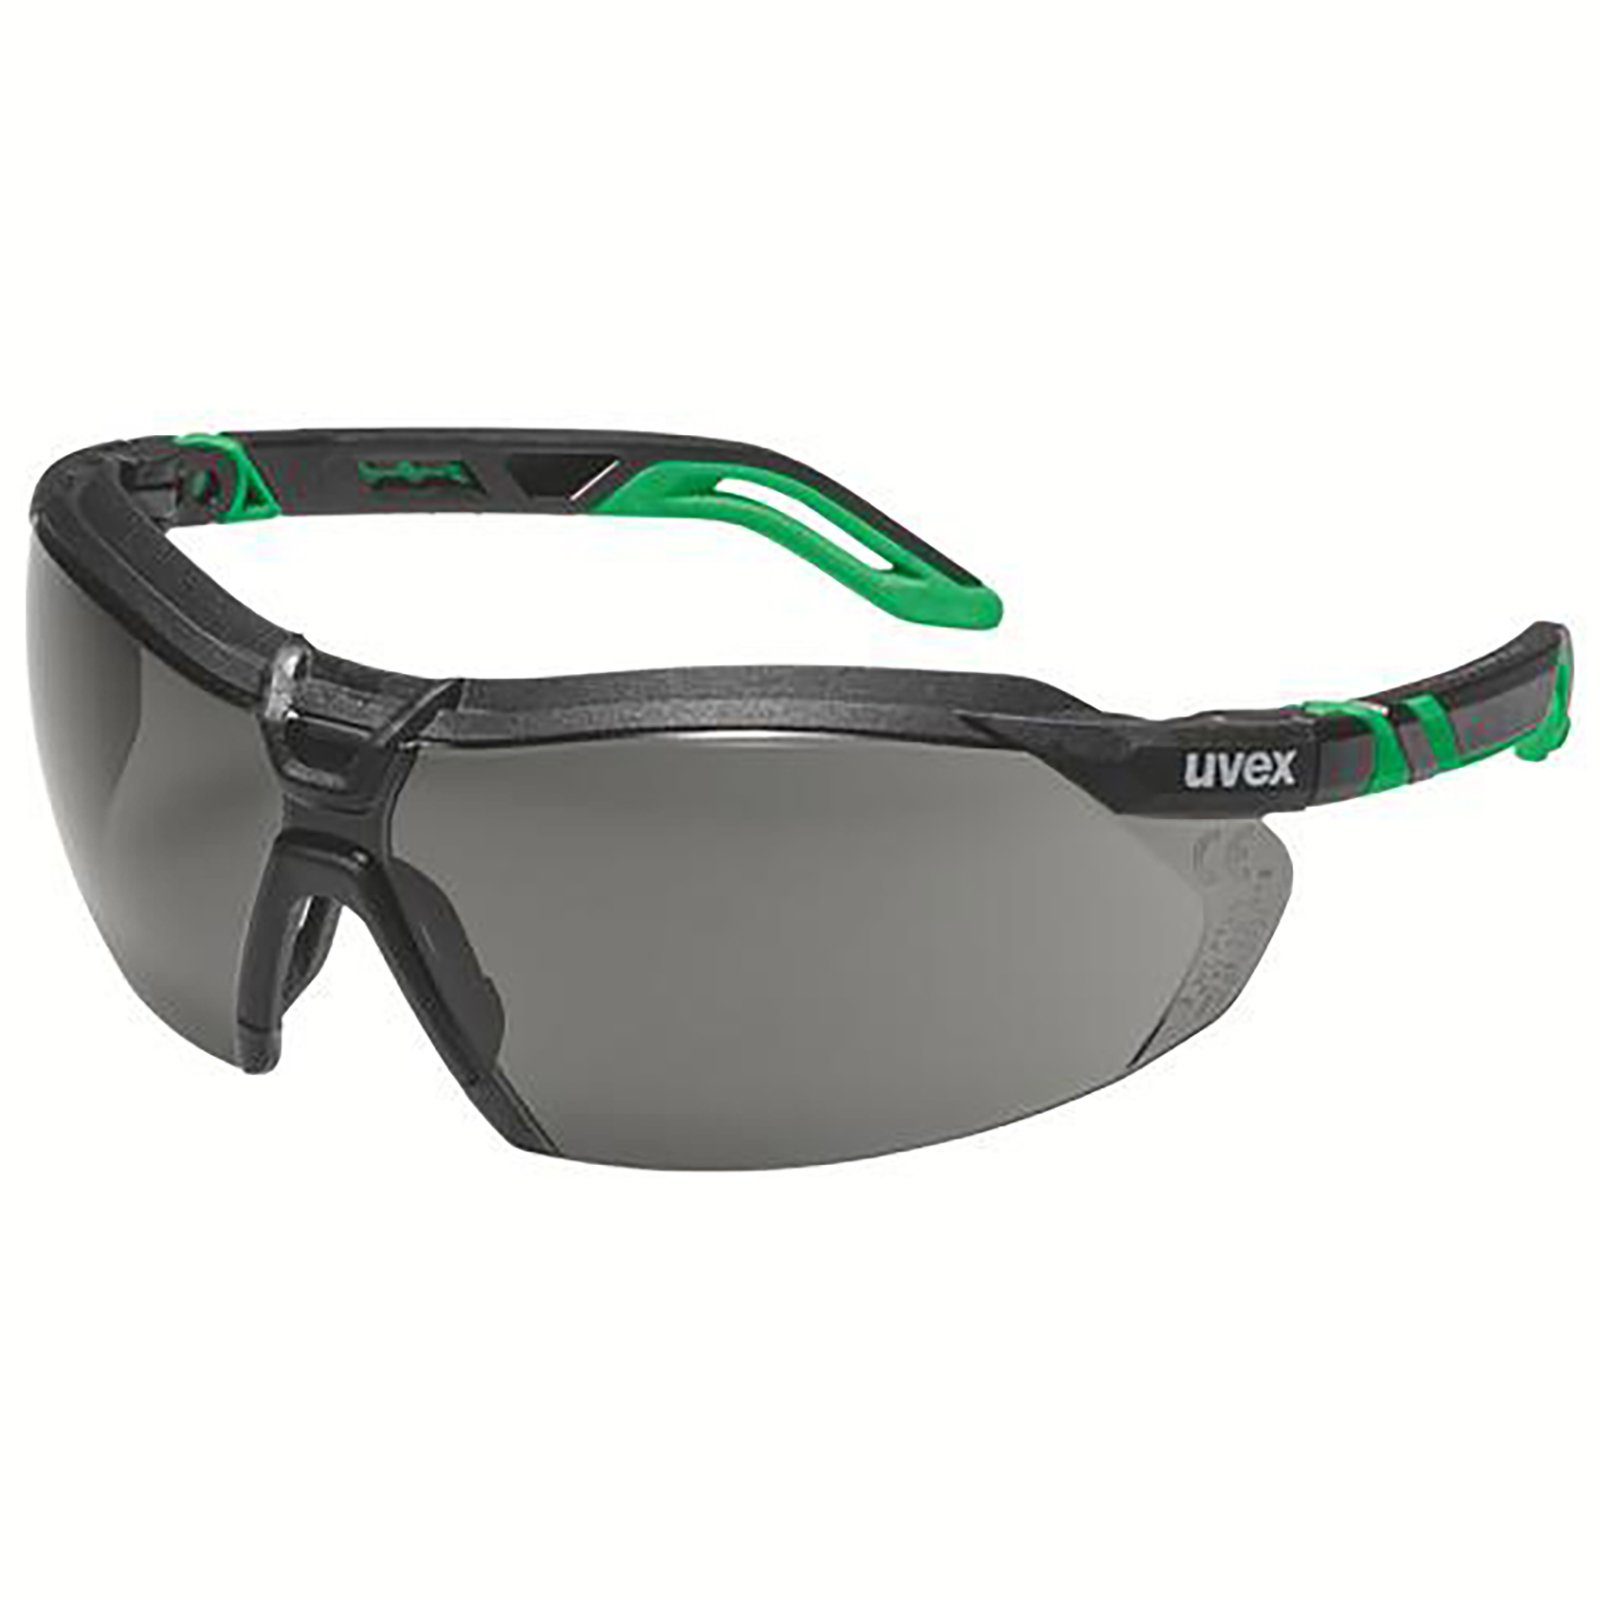 Uvex Arbeitsschutzbrille Bügelbrille i-5 grau plus 3 Schweißerschutz inf